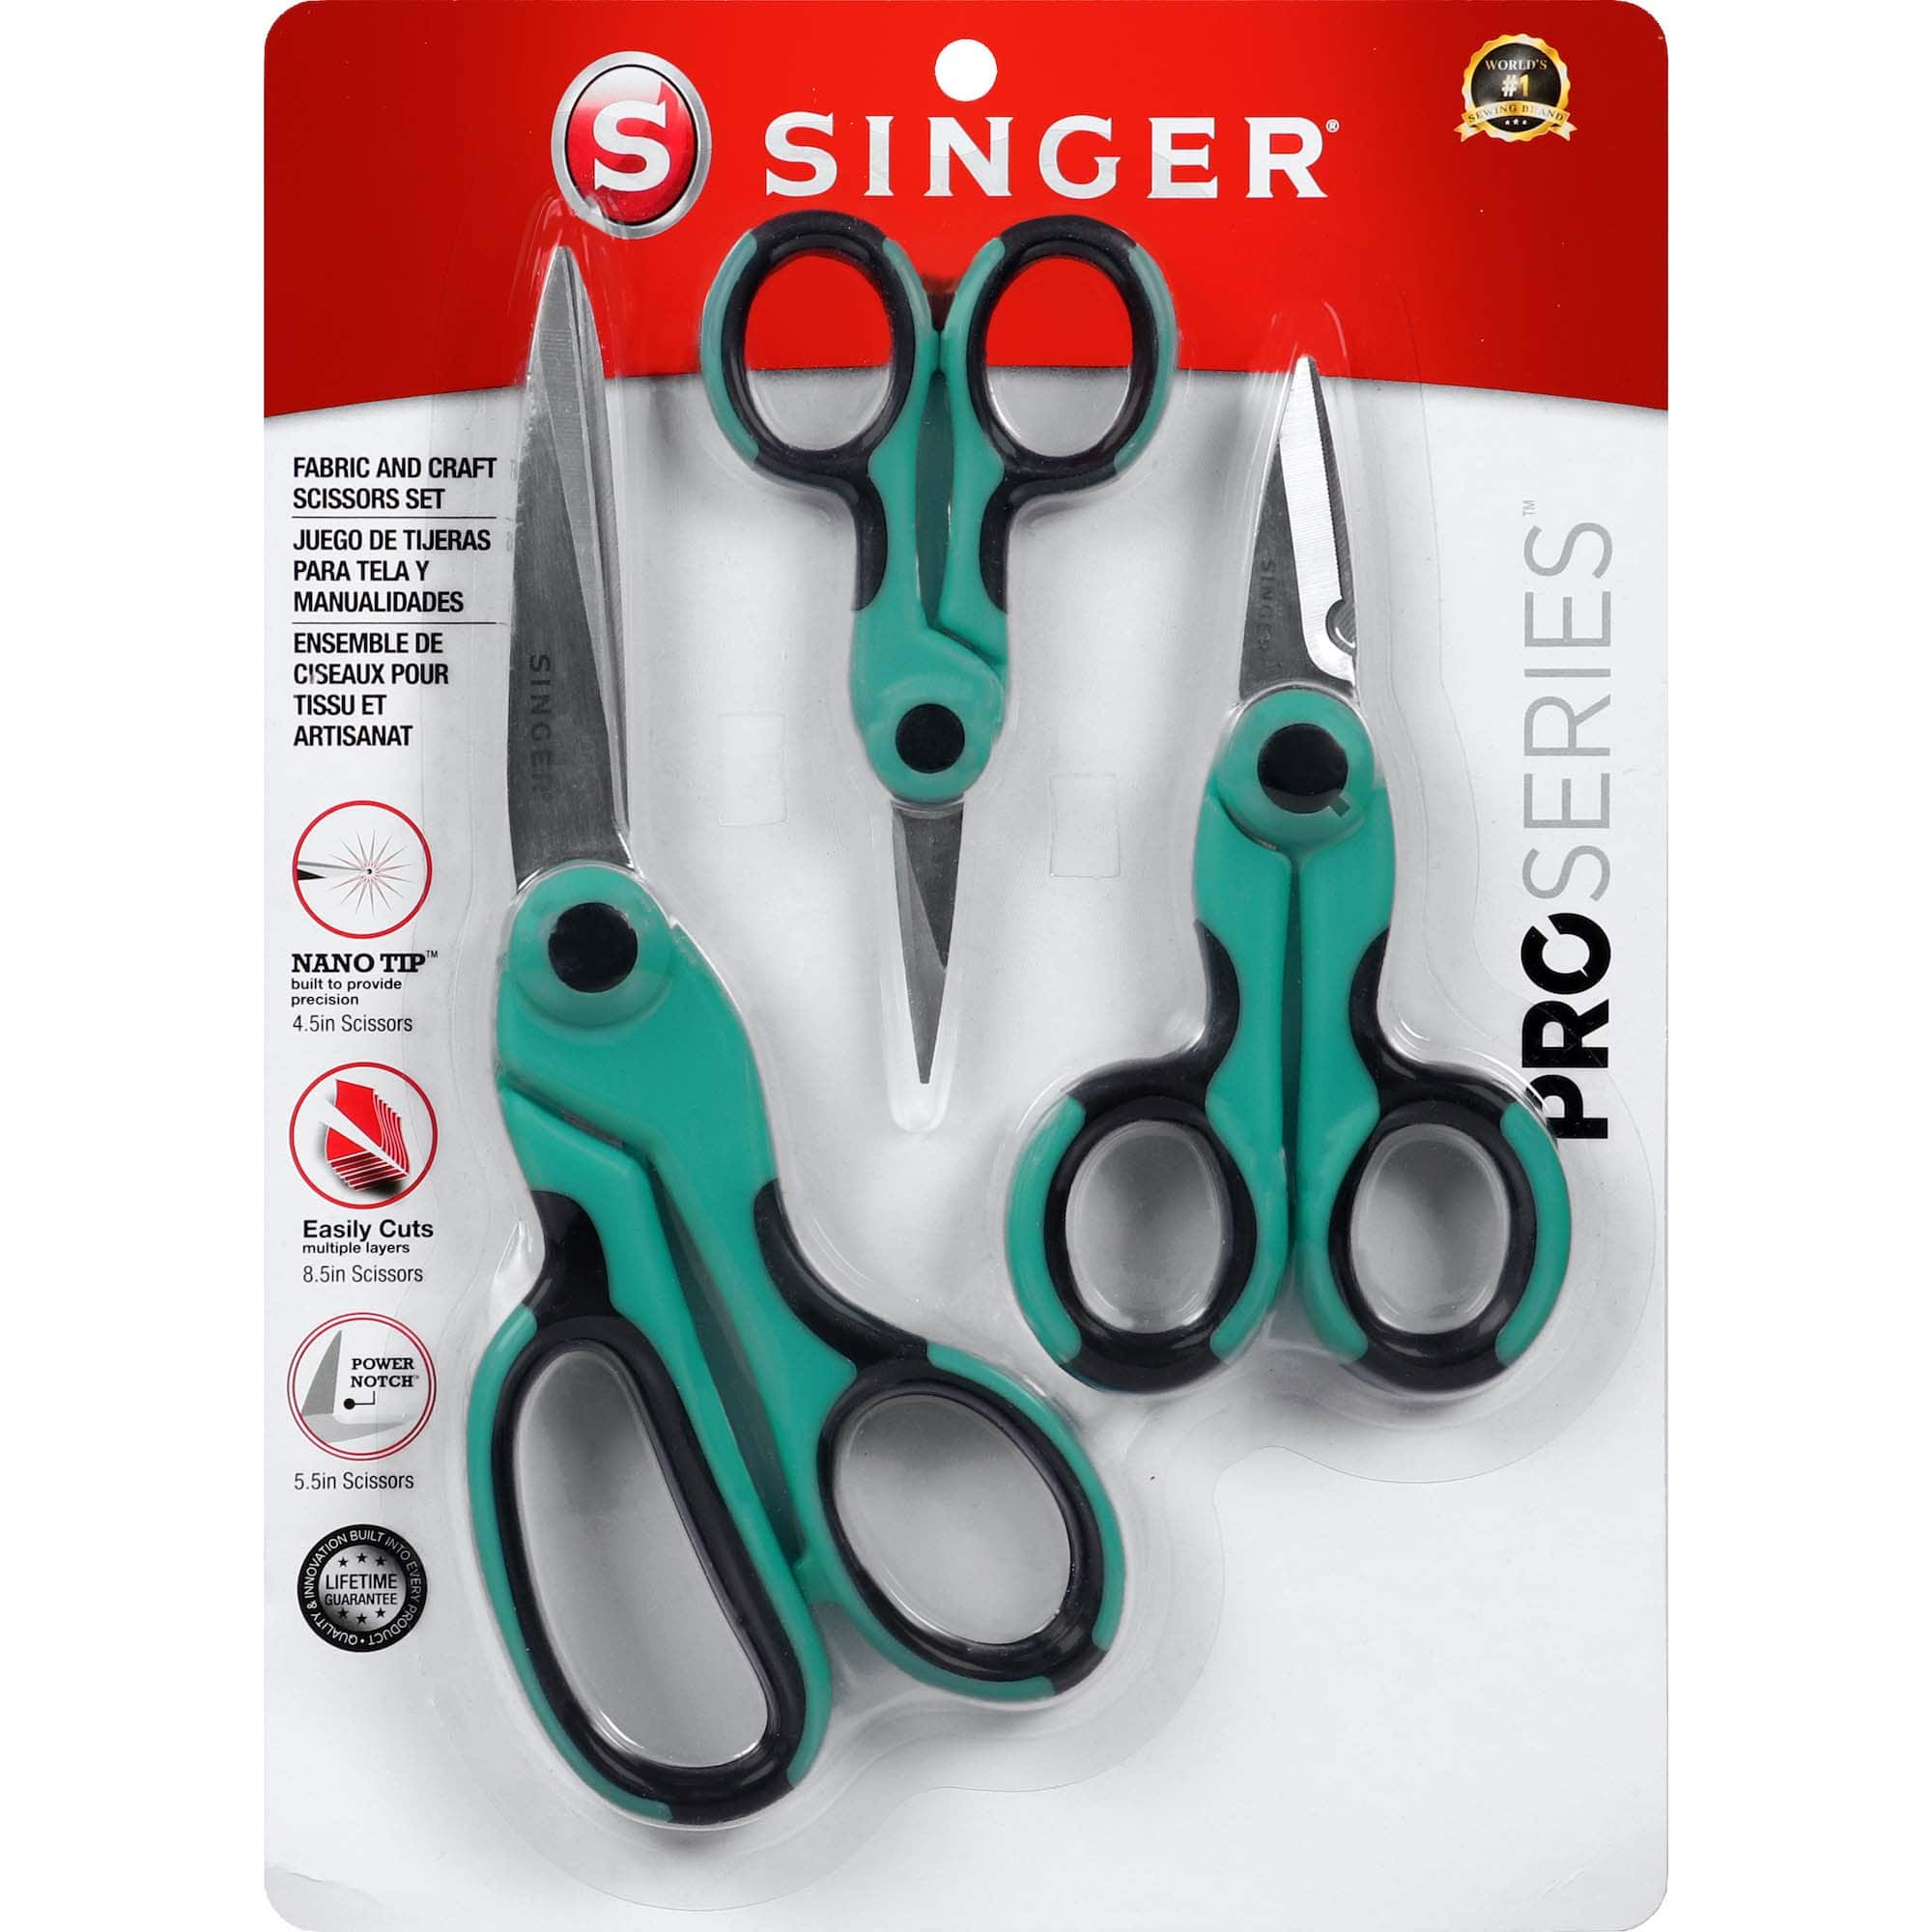 SINGER&#xAE; ProSeries Scissor Set